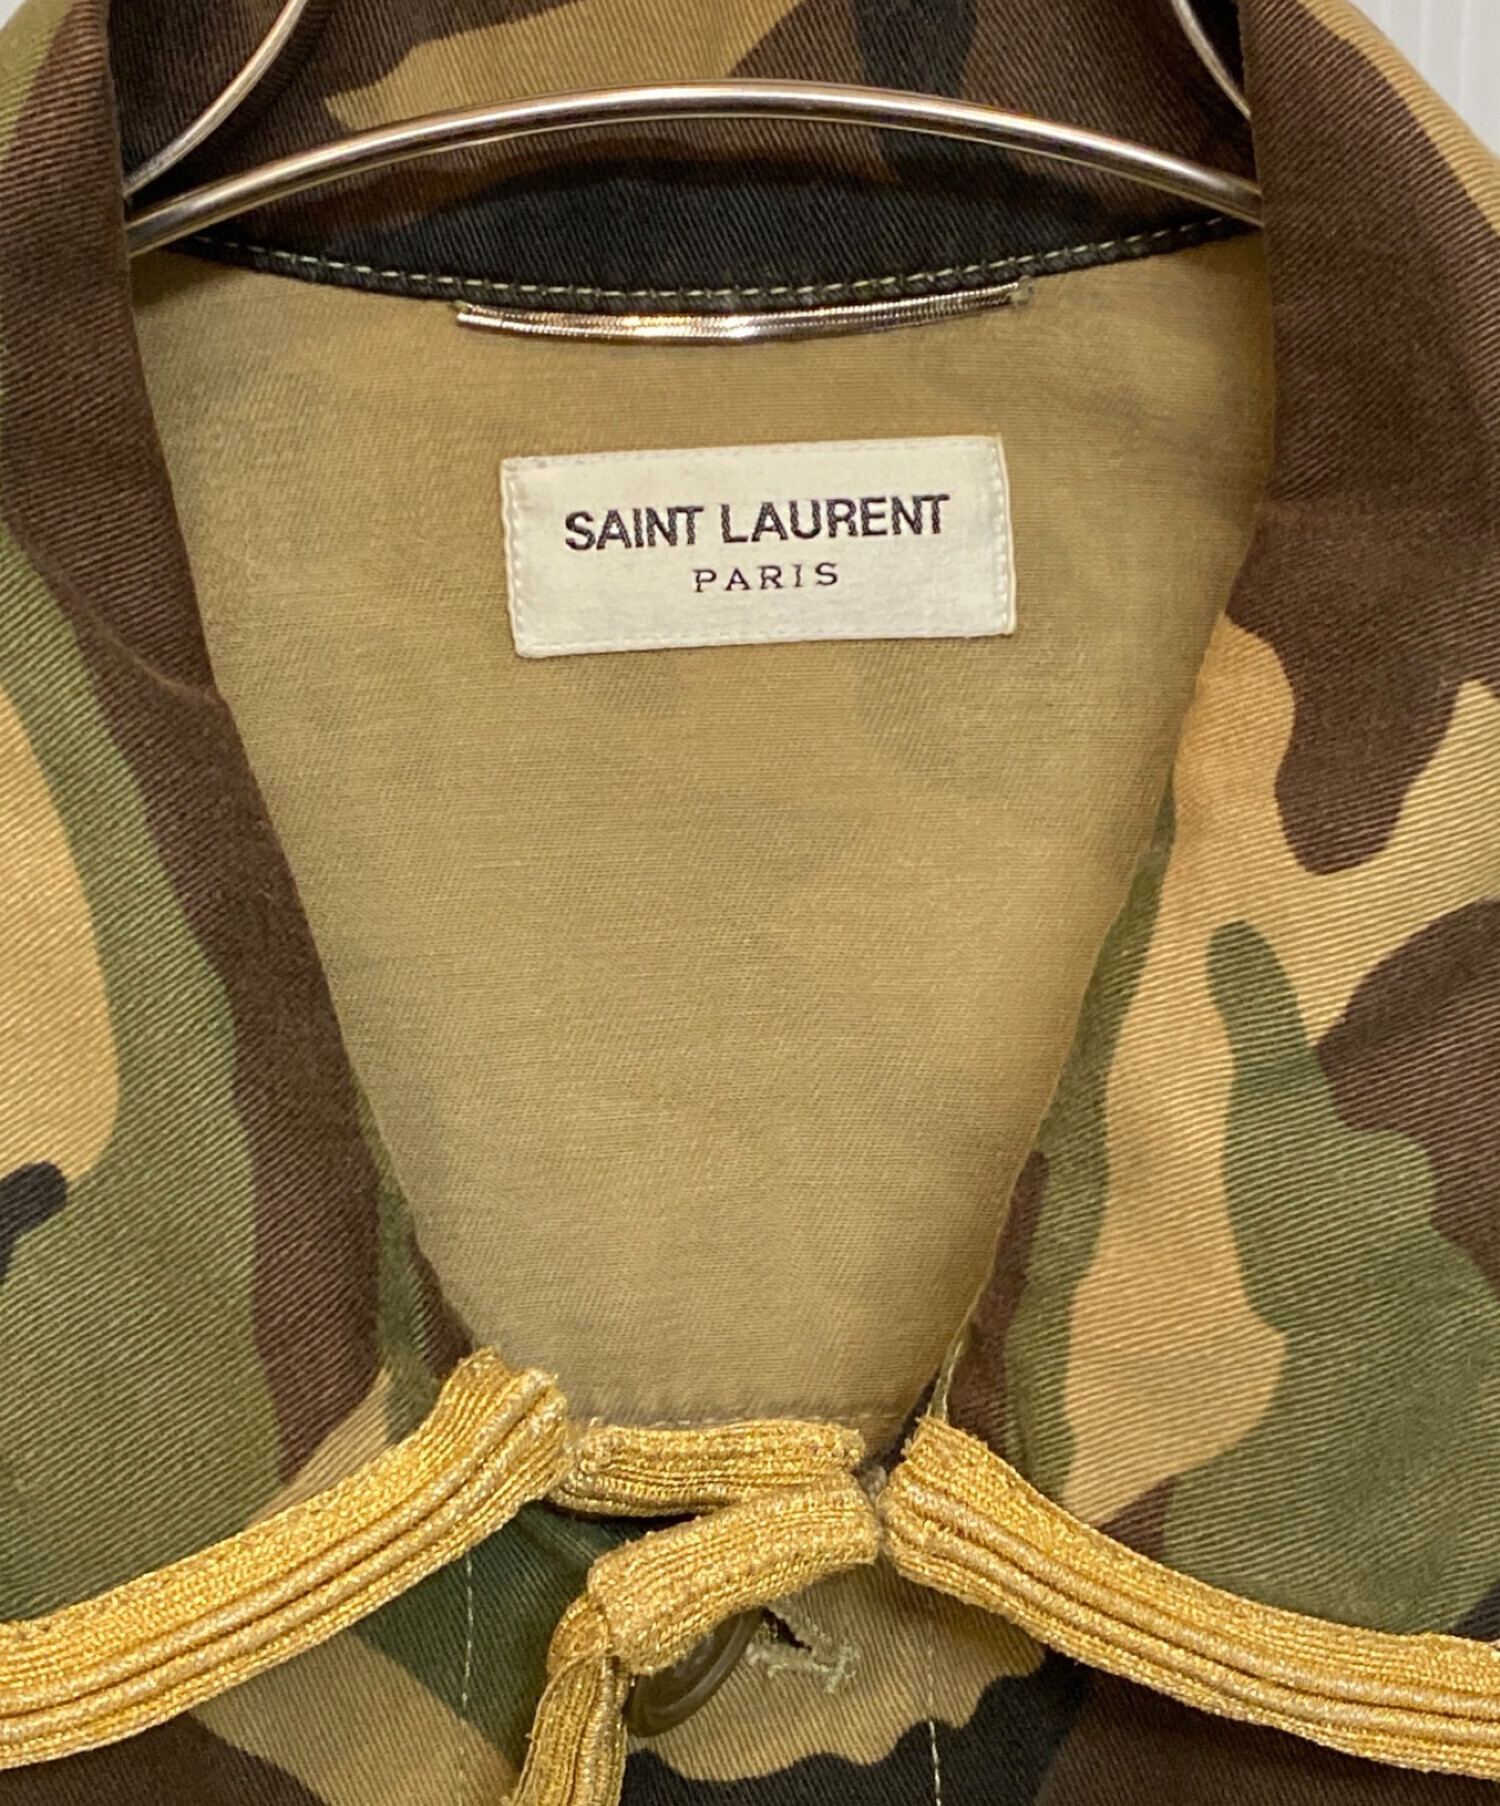 Saint Laurent Paris (サンローランパリ) カモフラミリタリージャケット カーキ サイズ:48